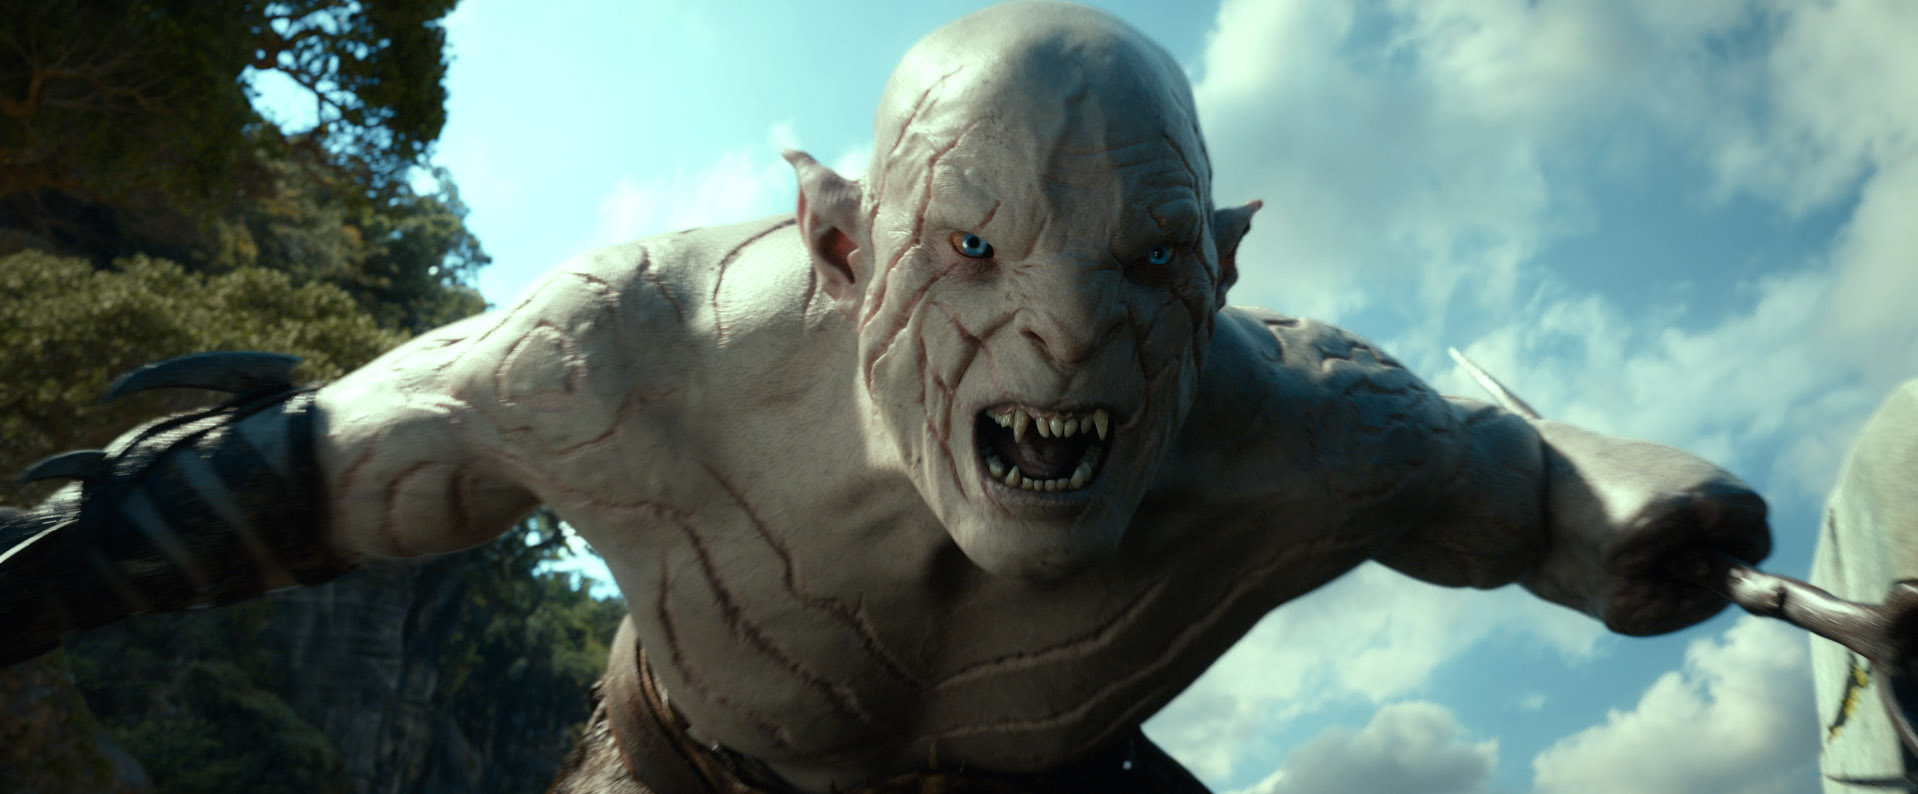 Nuevo Banner de El Hobbit: La Desolación de Smaug… Mañana Nuevo Trailer!